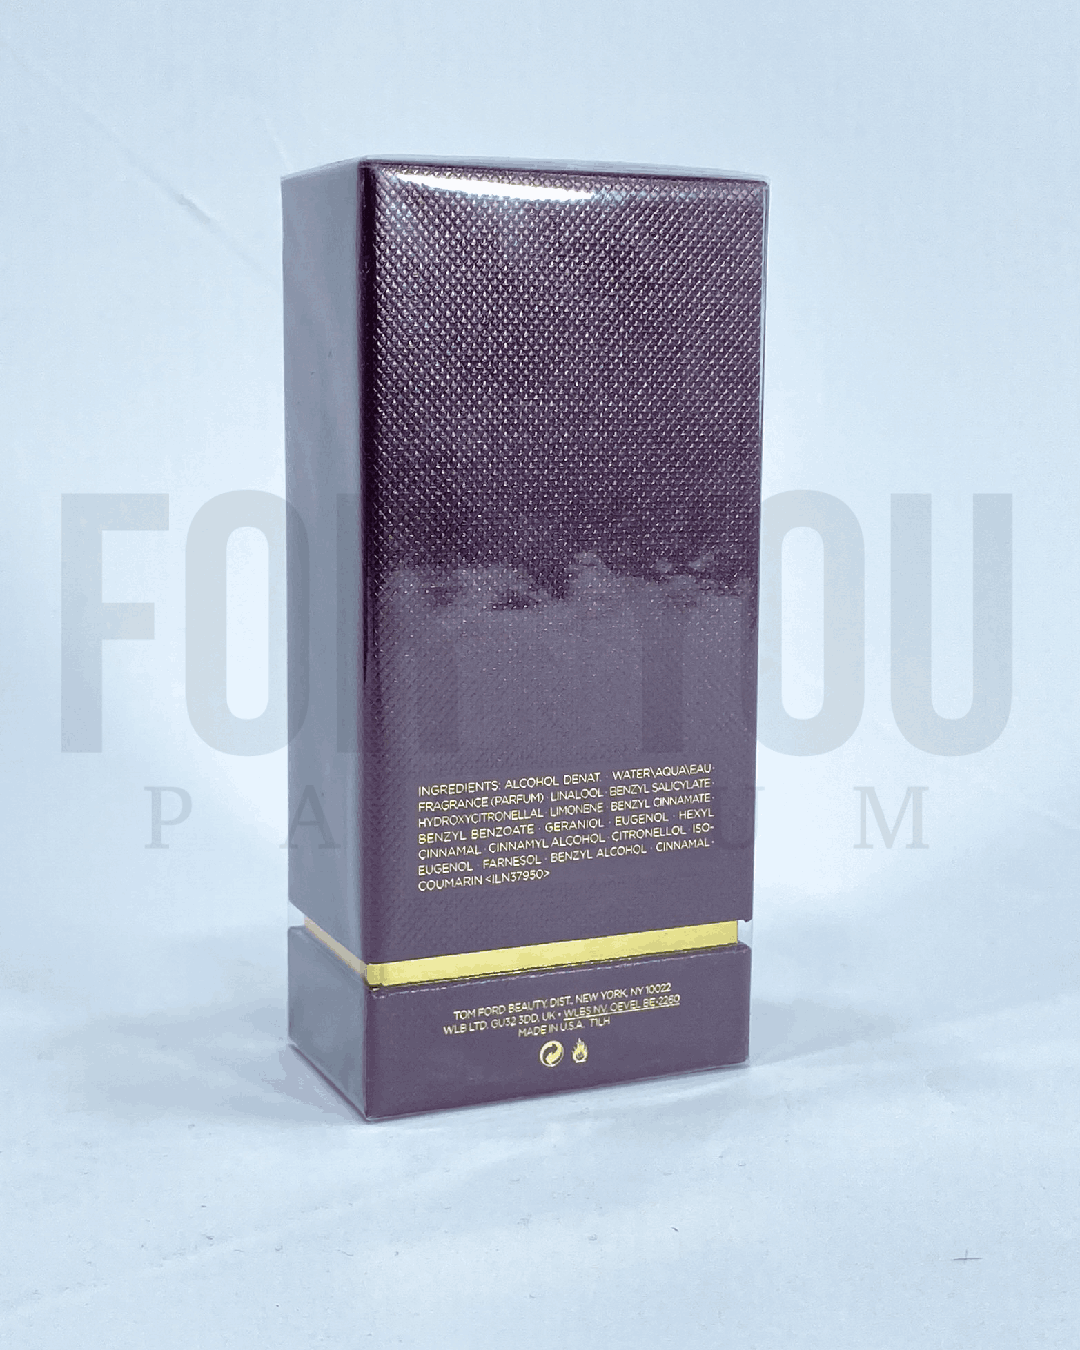 TOM FORD – JASMIN ROUGE Eau De Parfum